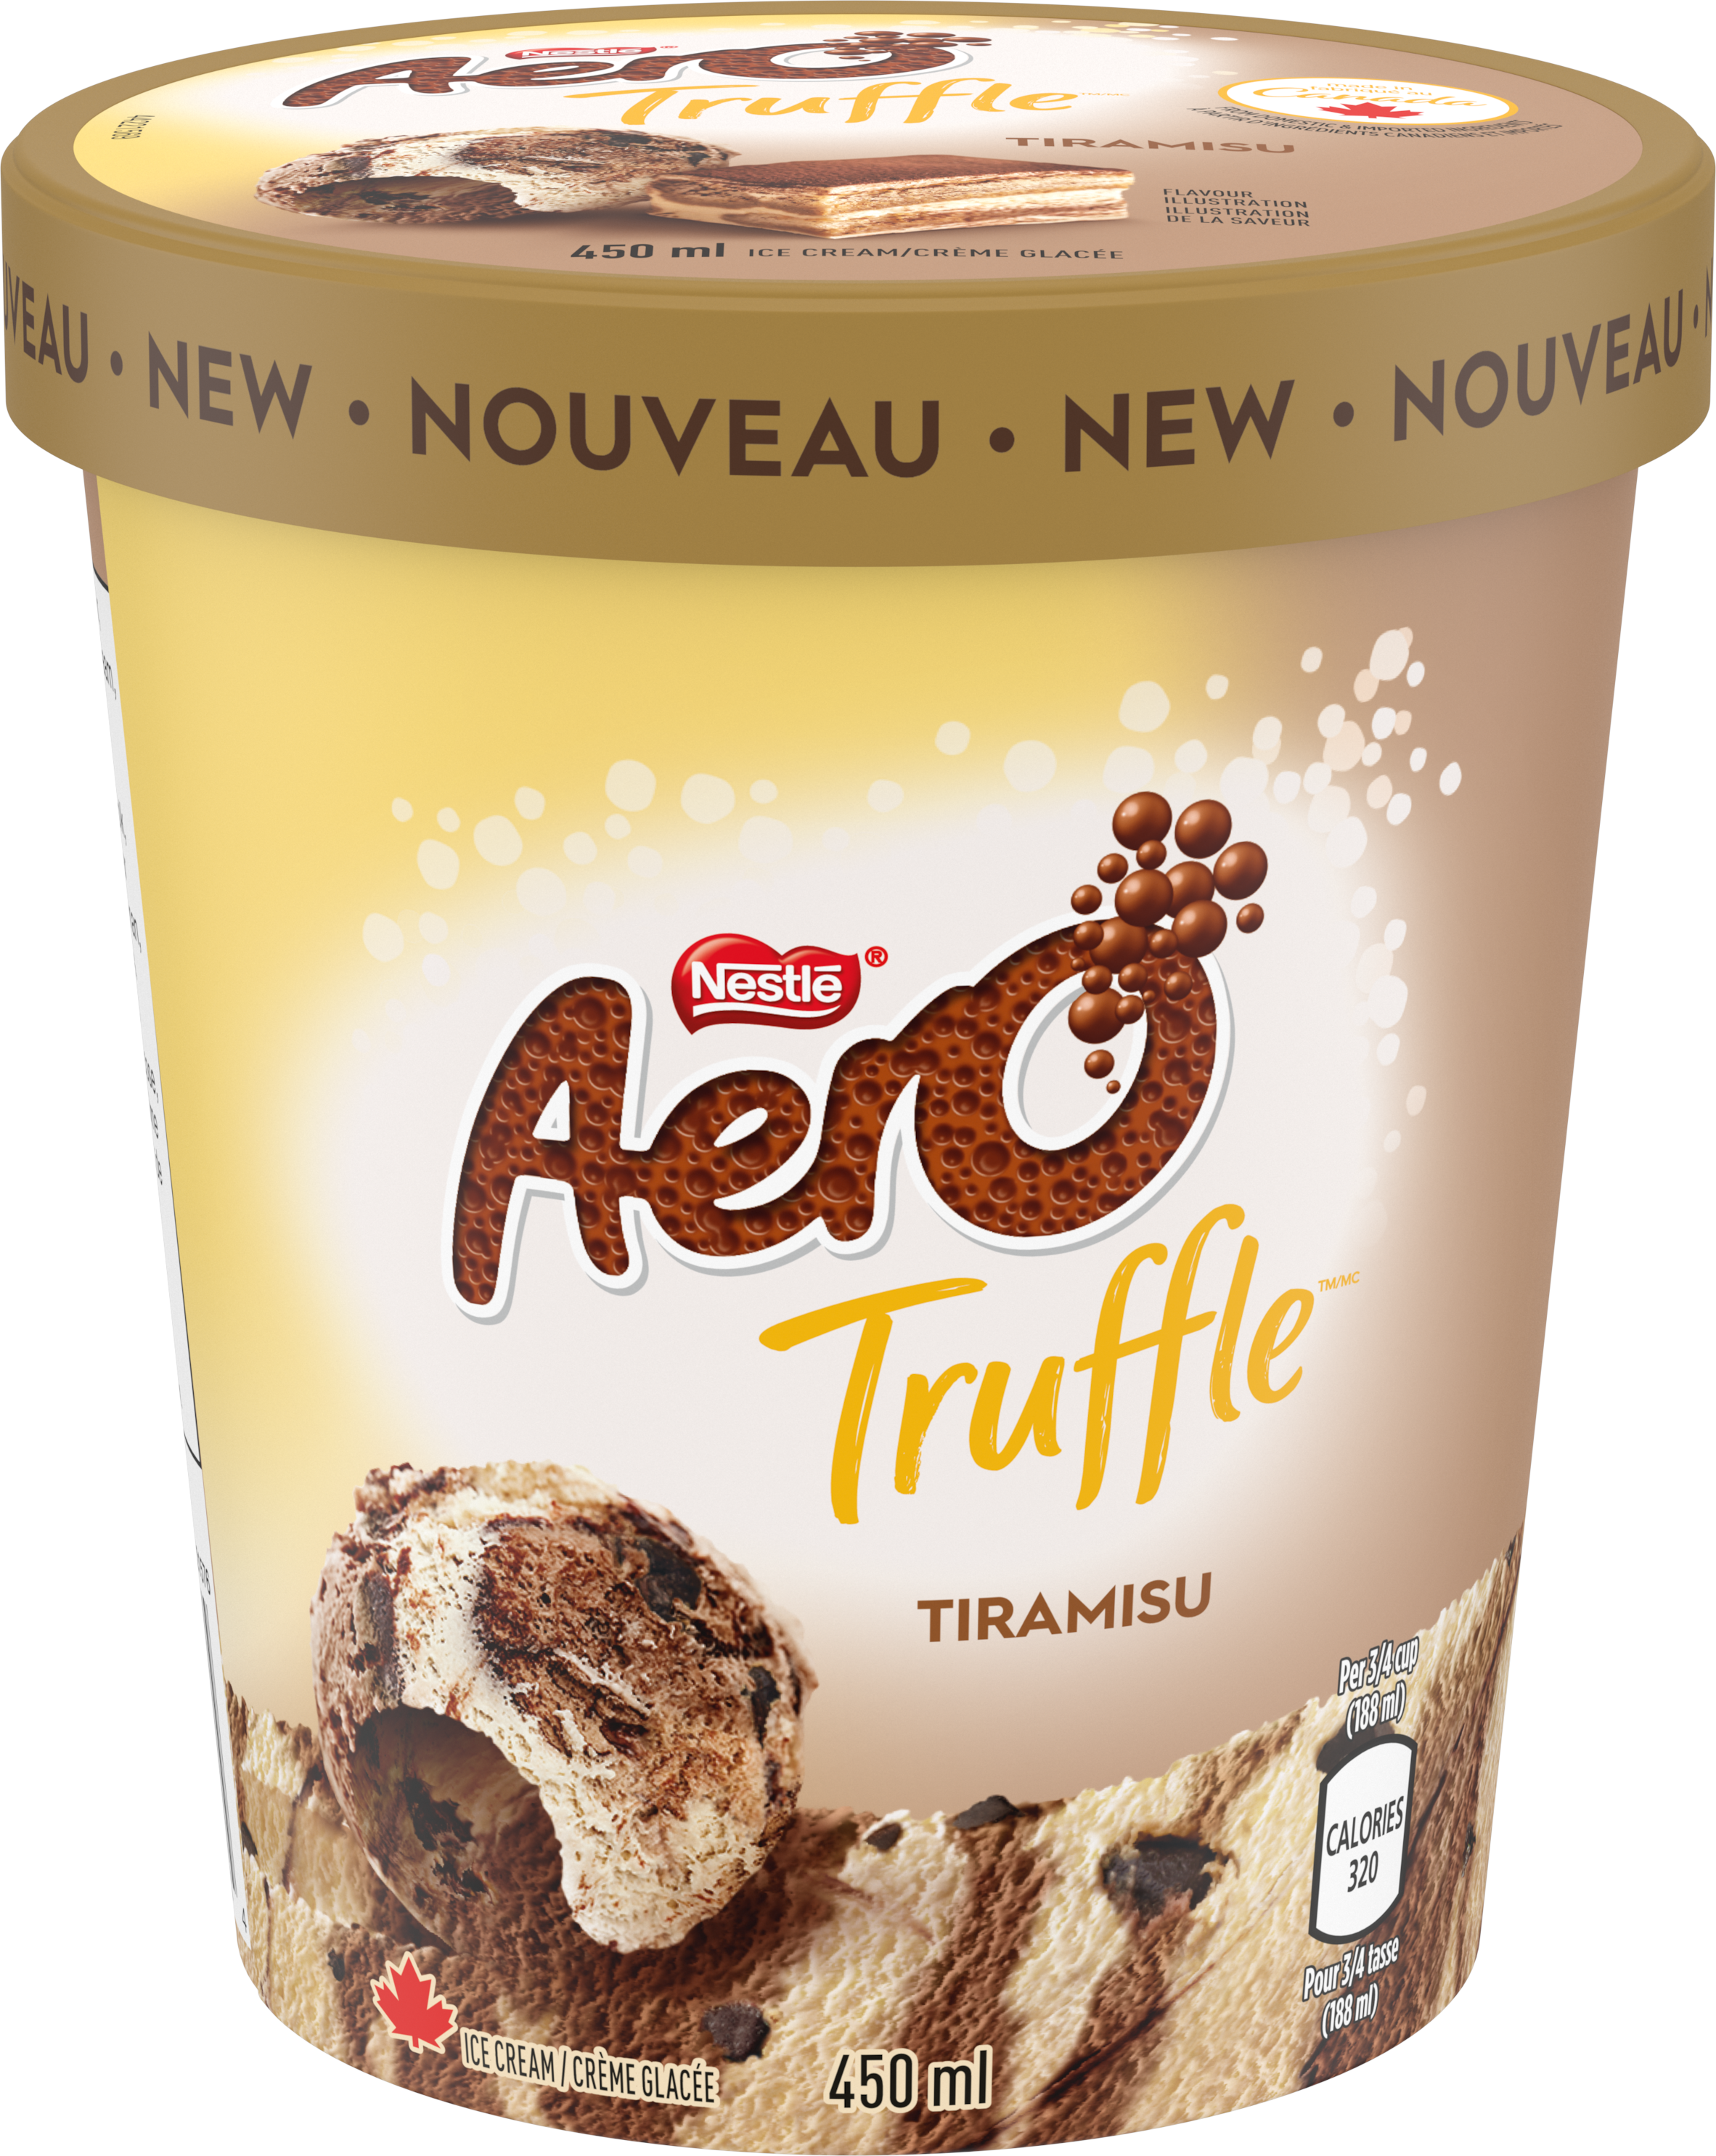 AERO Truffle Tiramisu Ice Cream Tub 450 ml